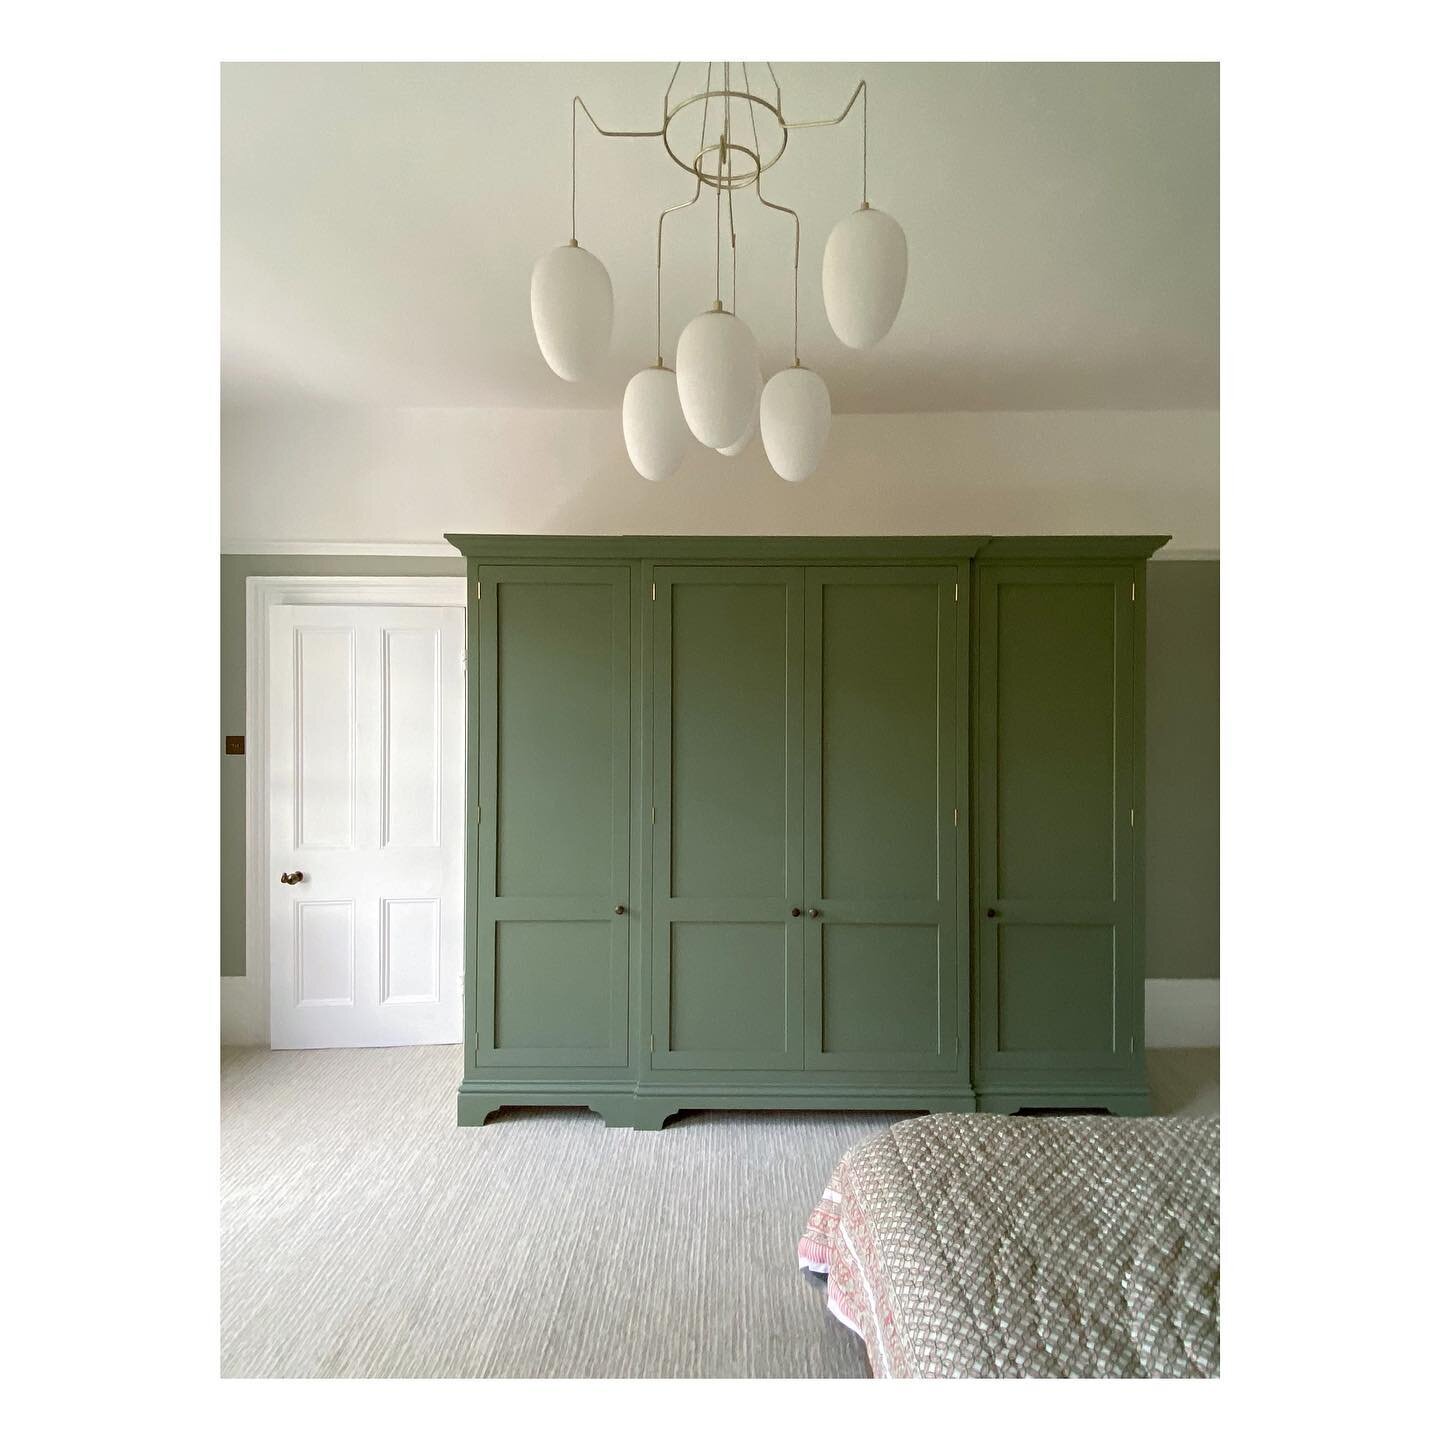 Lovely bespoke wardrobe for a lovely home..
.
.
.
.
#bespokewardrobe #interiordesign #littlegreene #countryliving